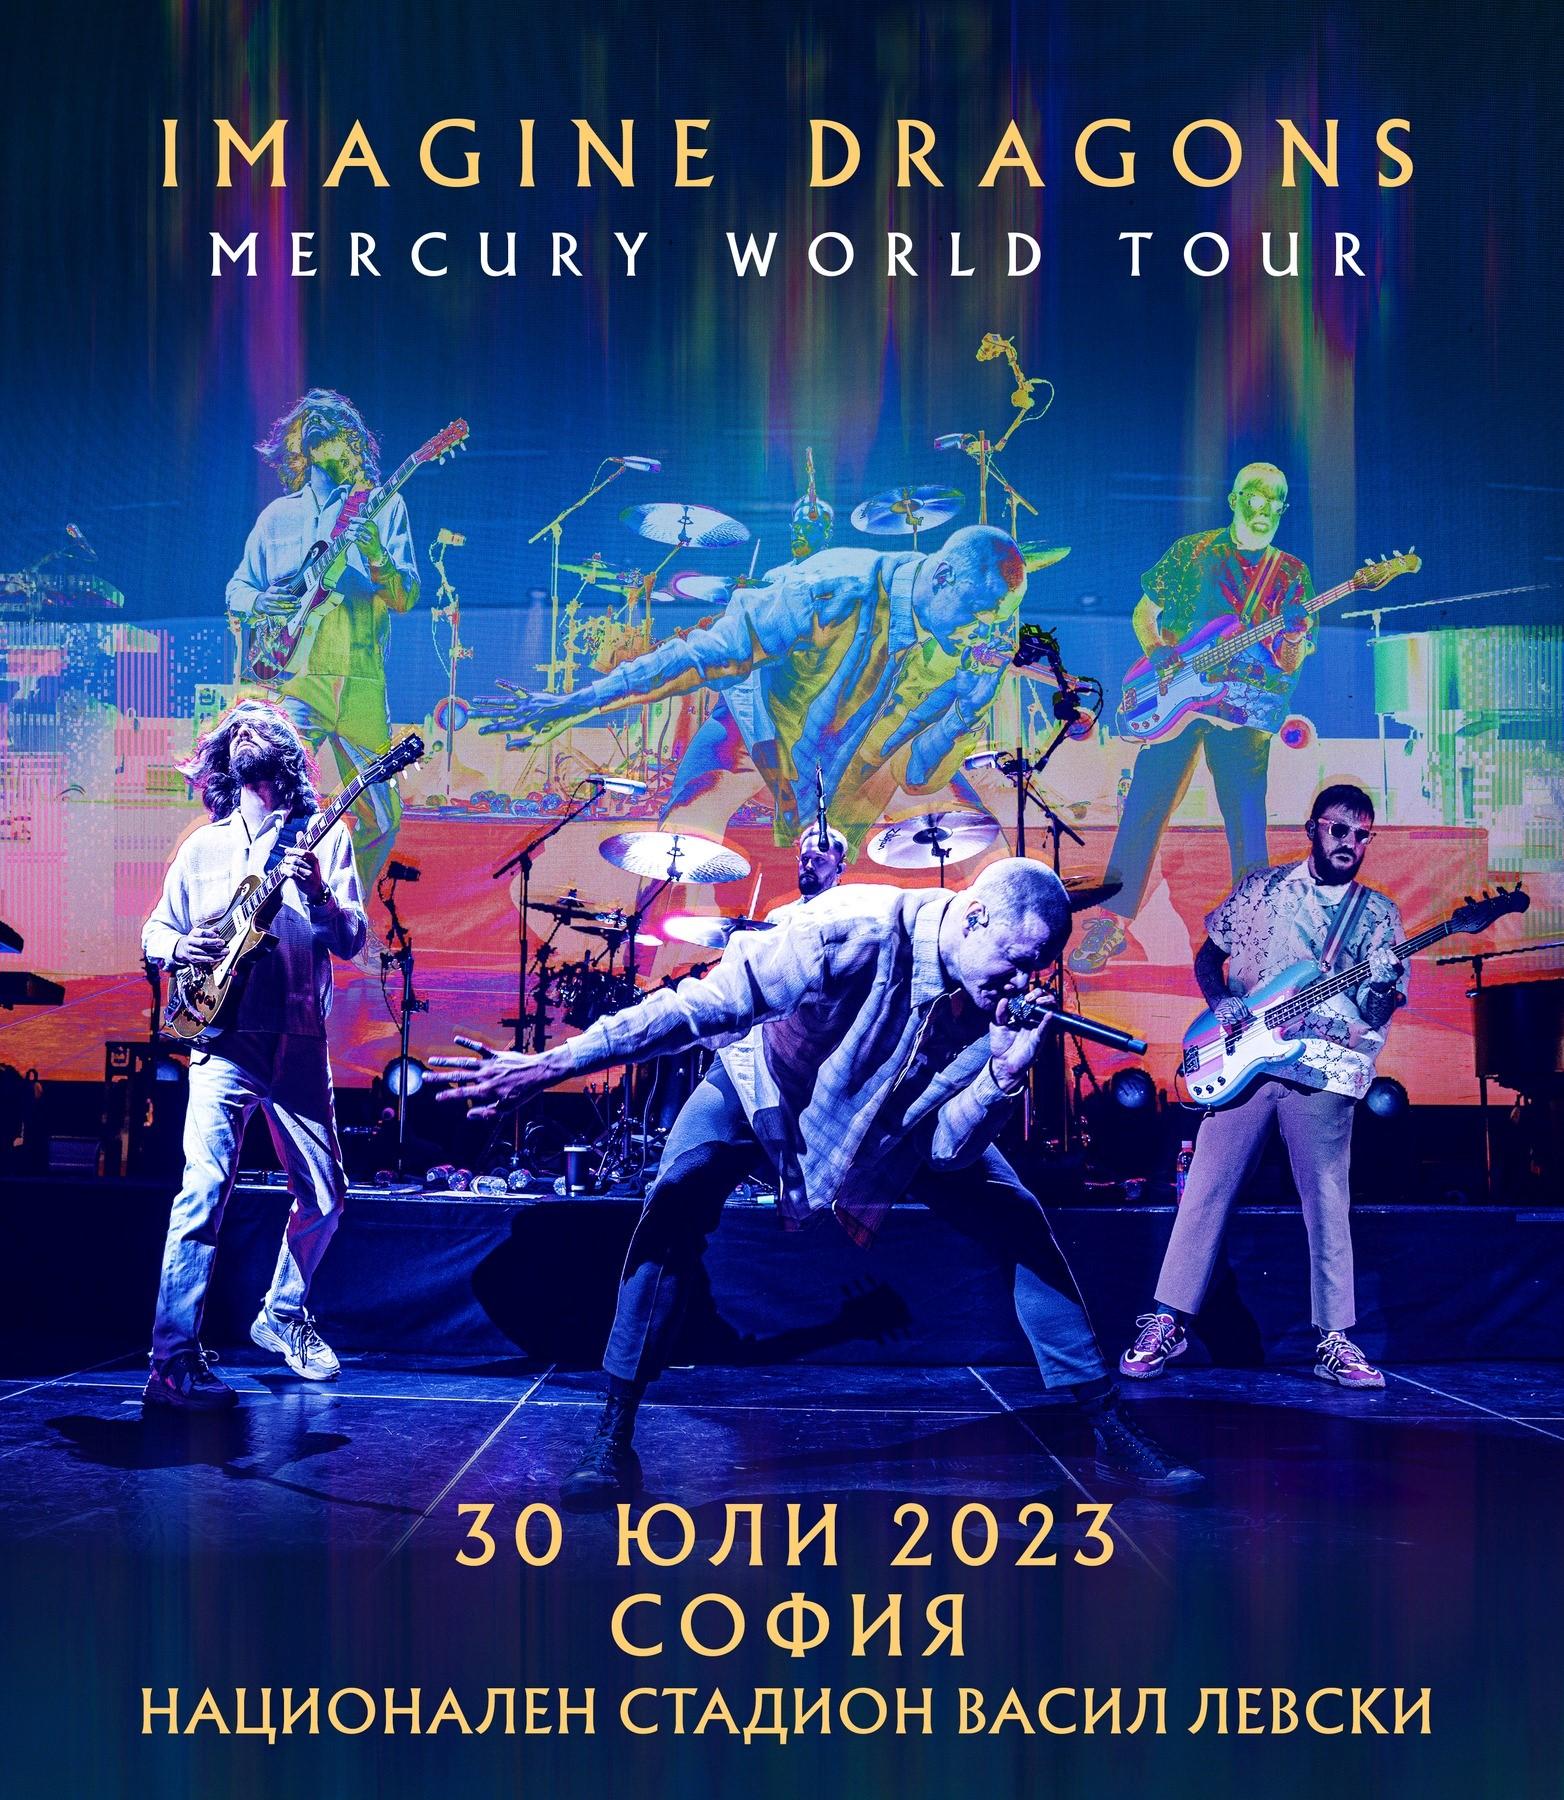 Imagine Dragons Live in Sofia